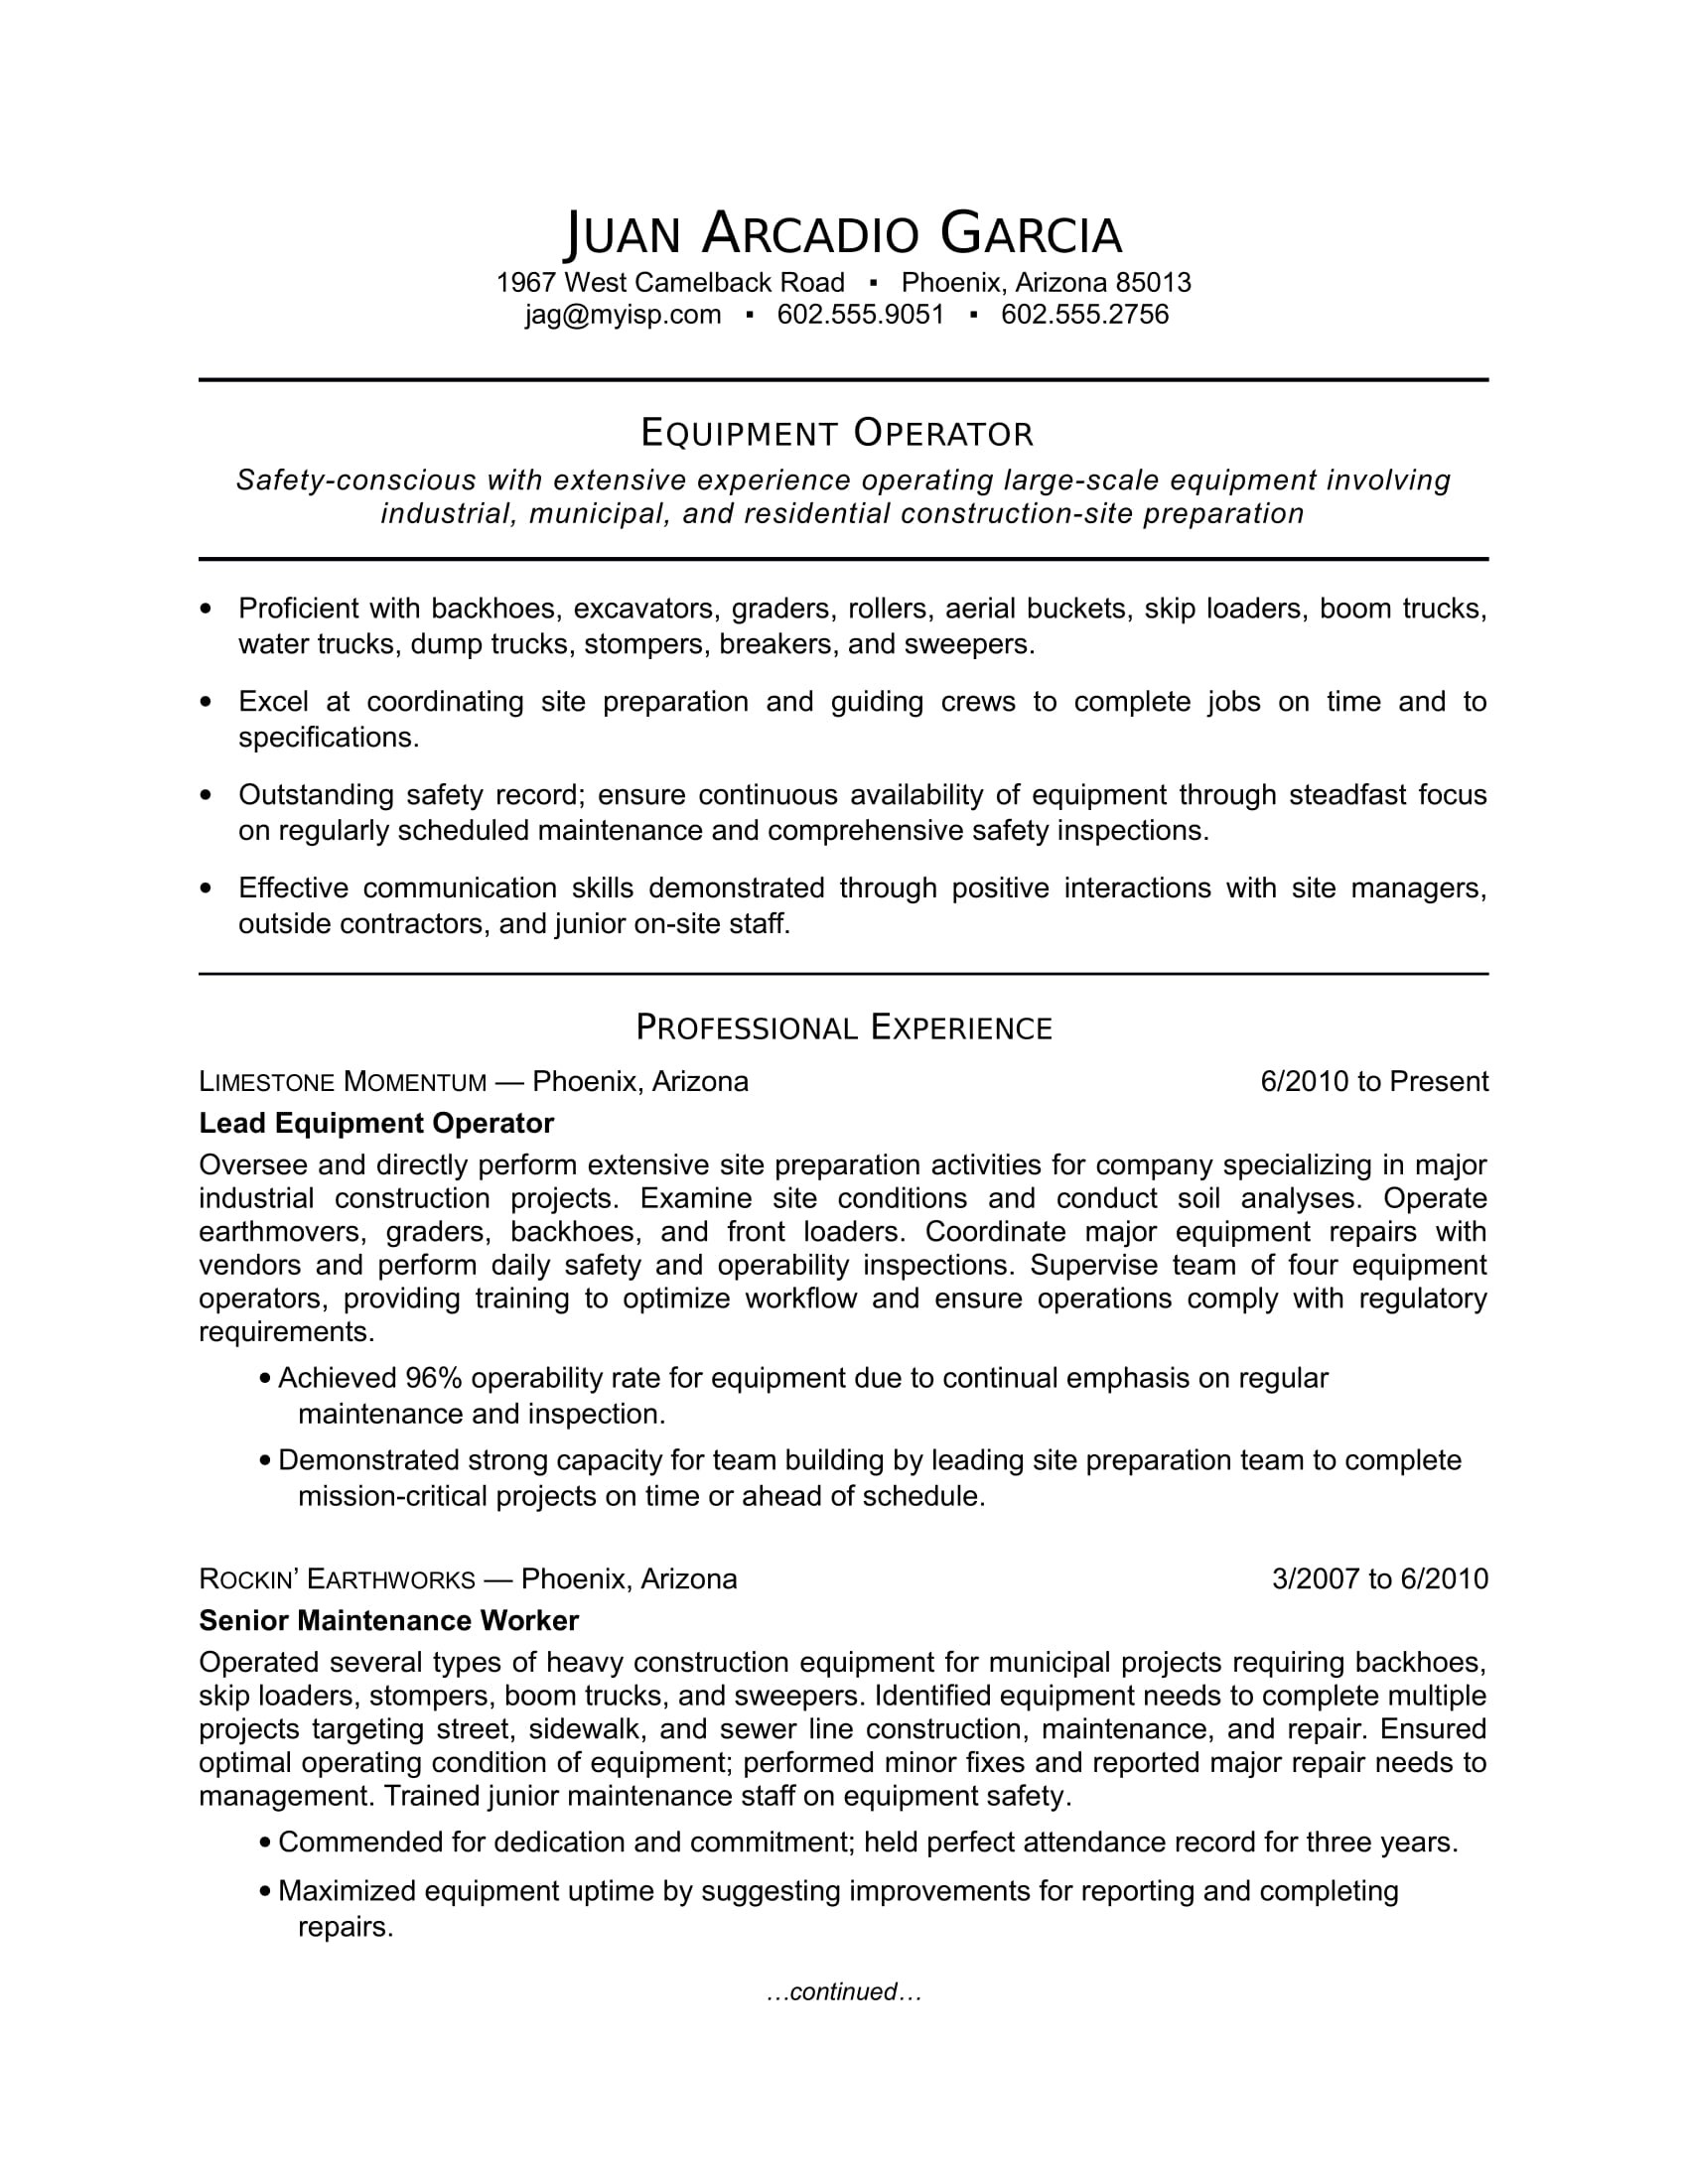 Sample Of Resume for Production Operator Helper Equipment Operator Resume Sample Monster.com